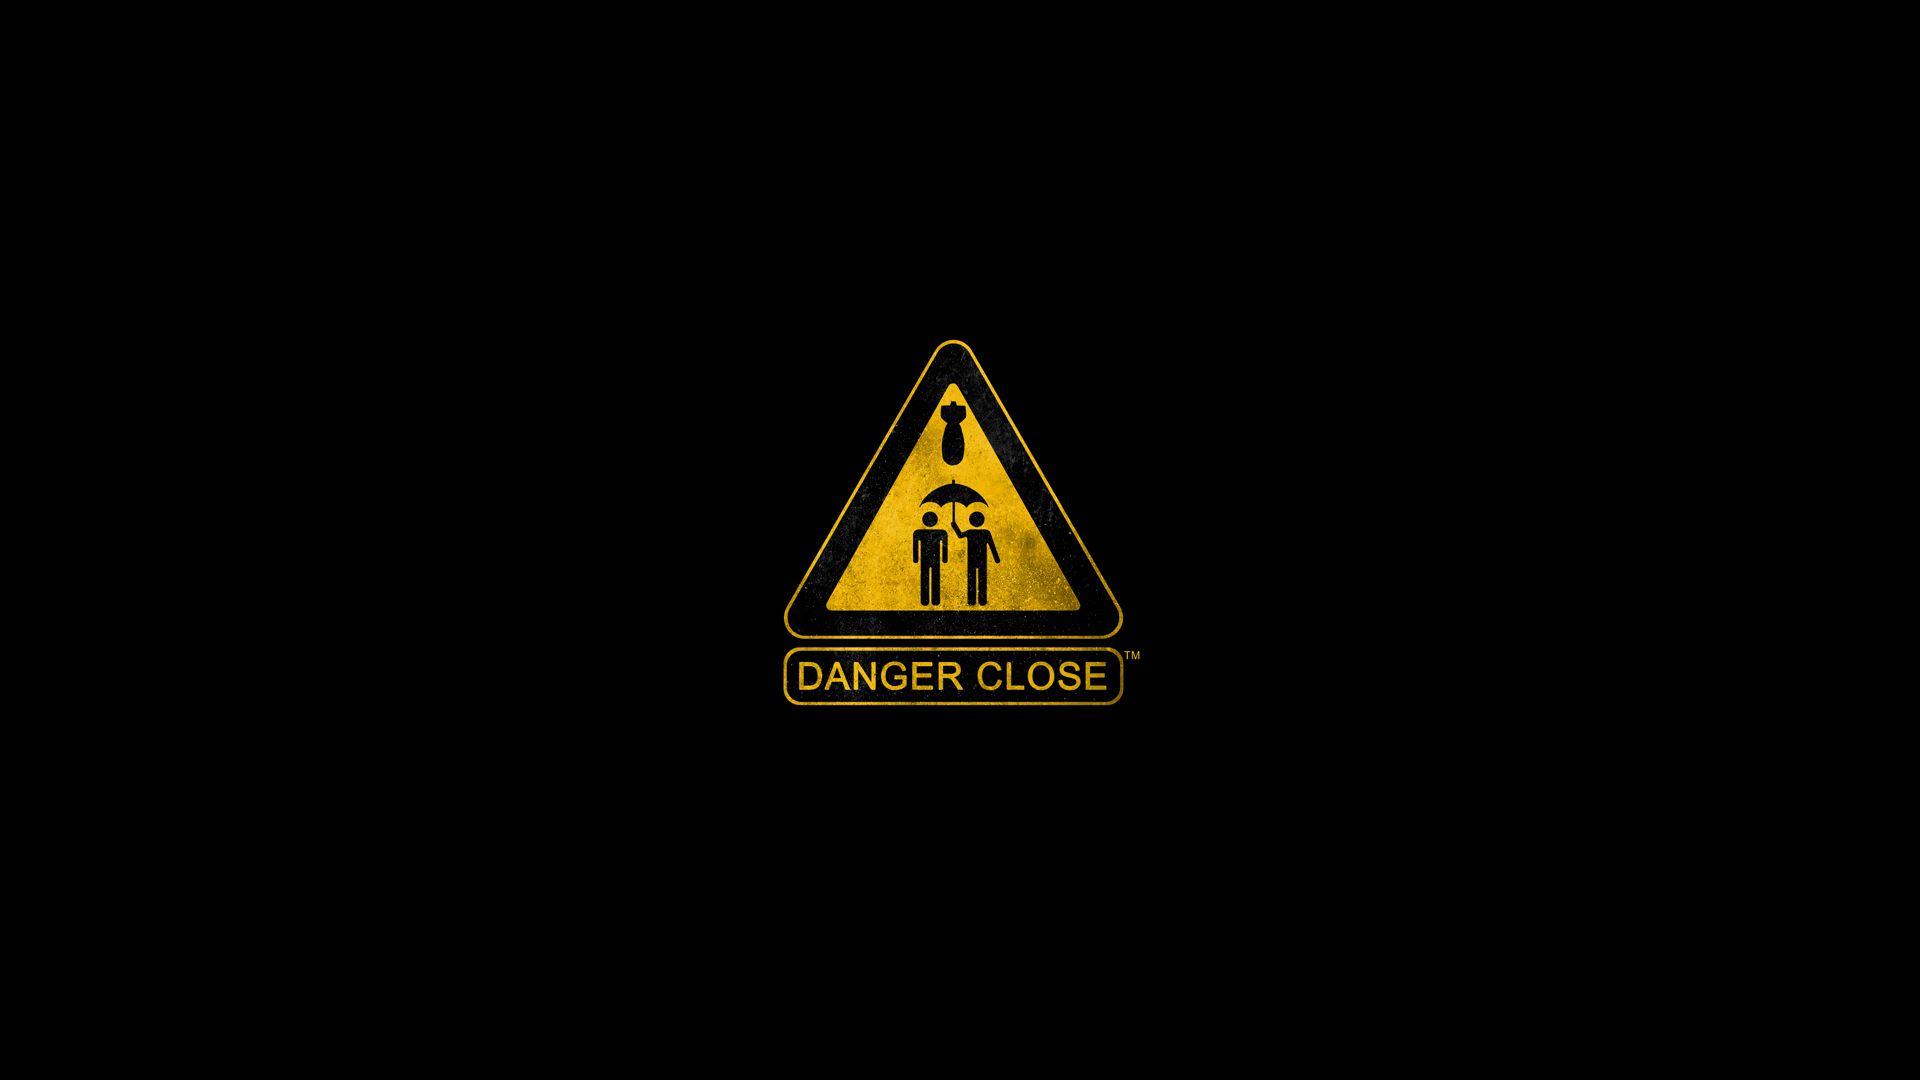 Danger Close HD Wallpaper image